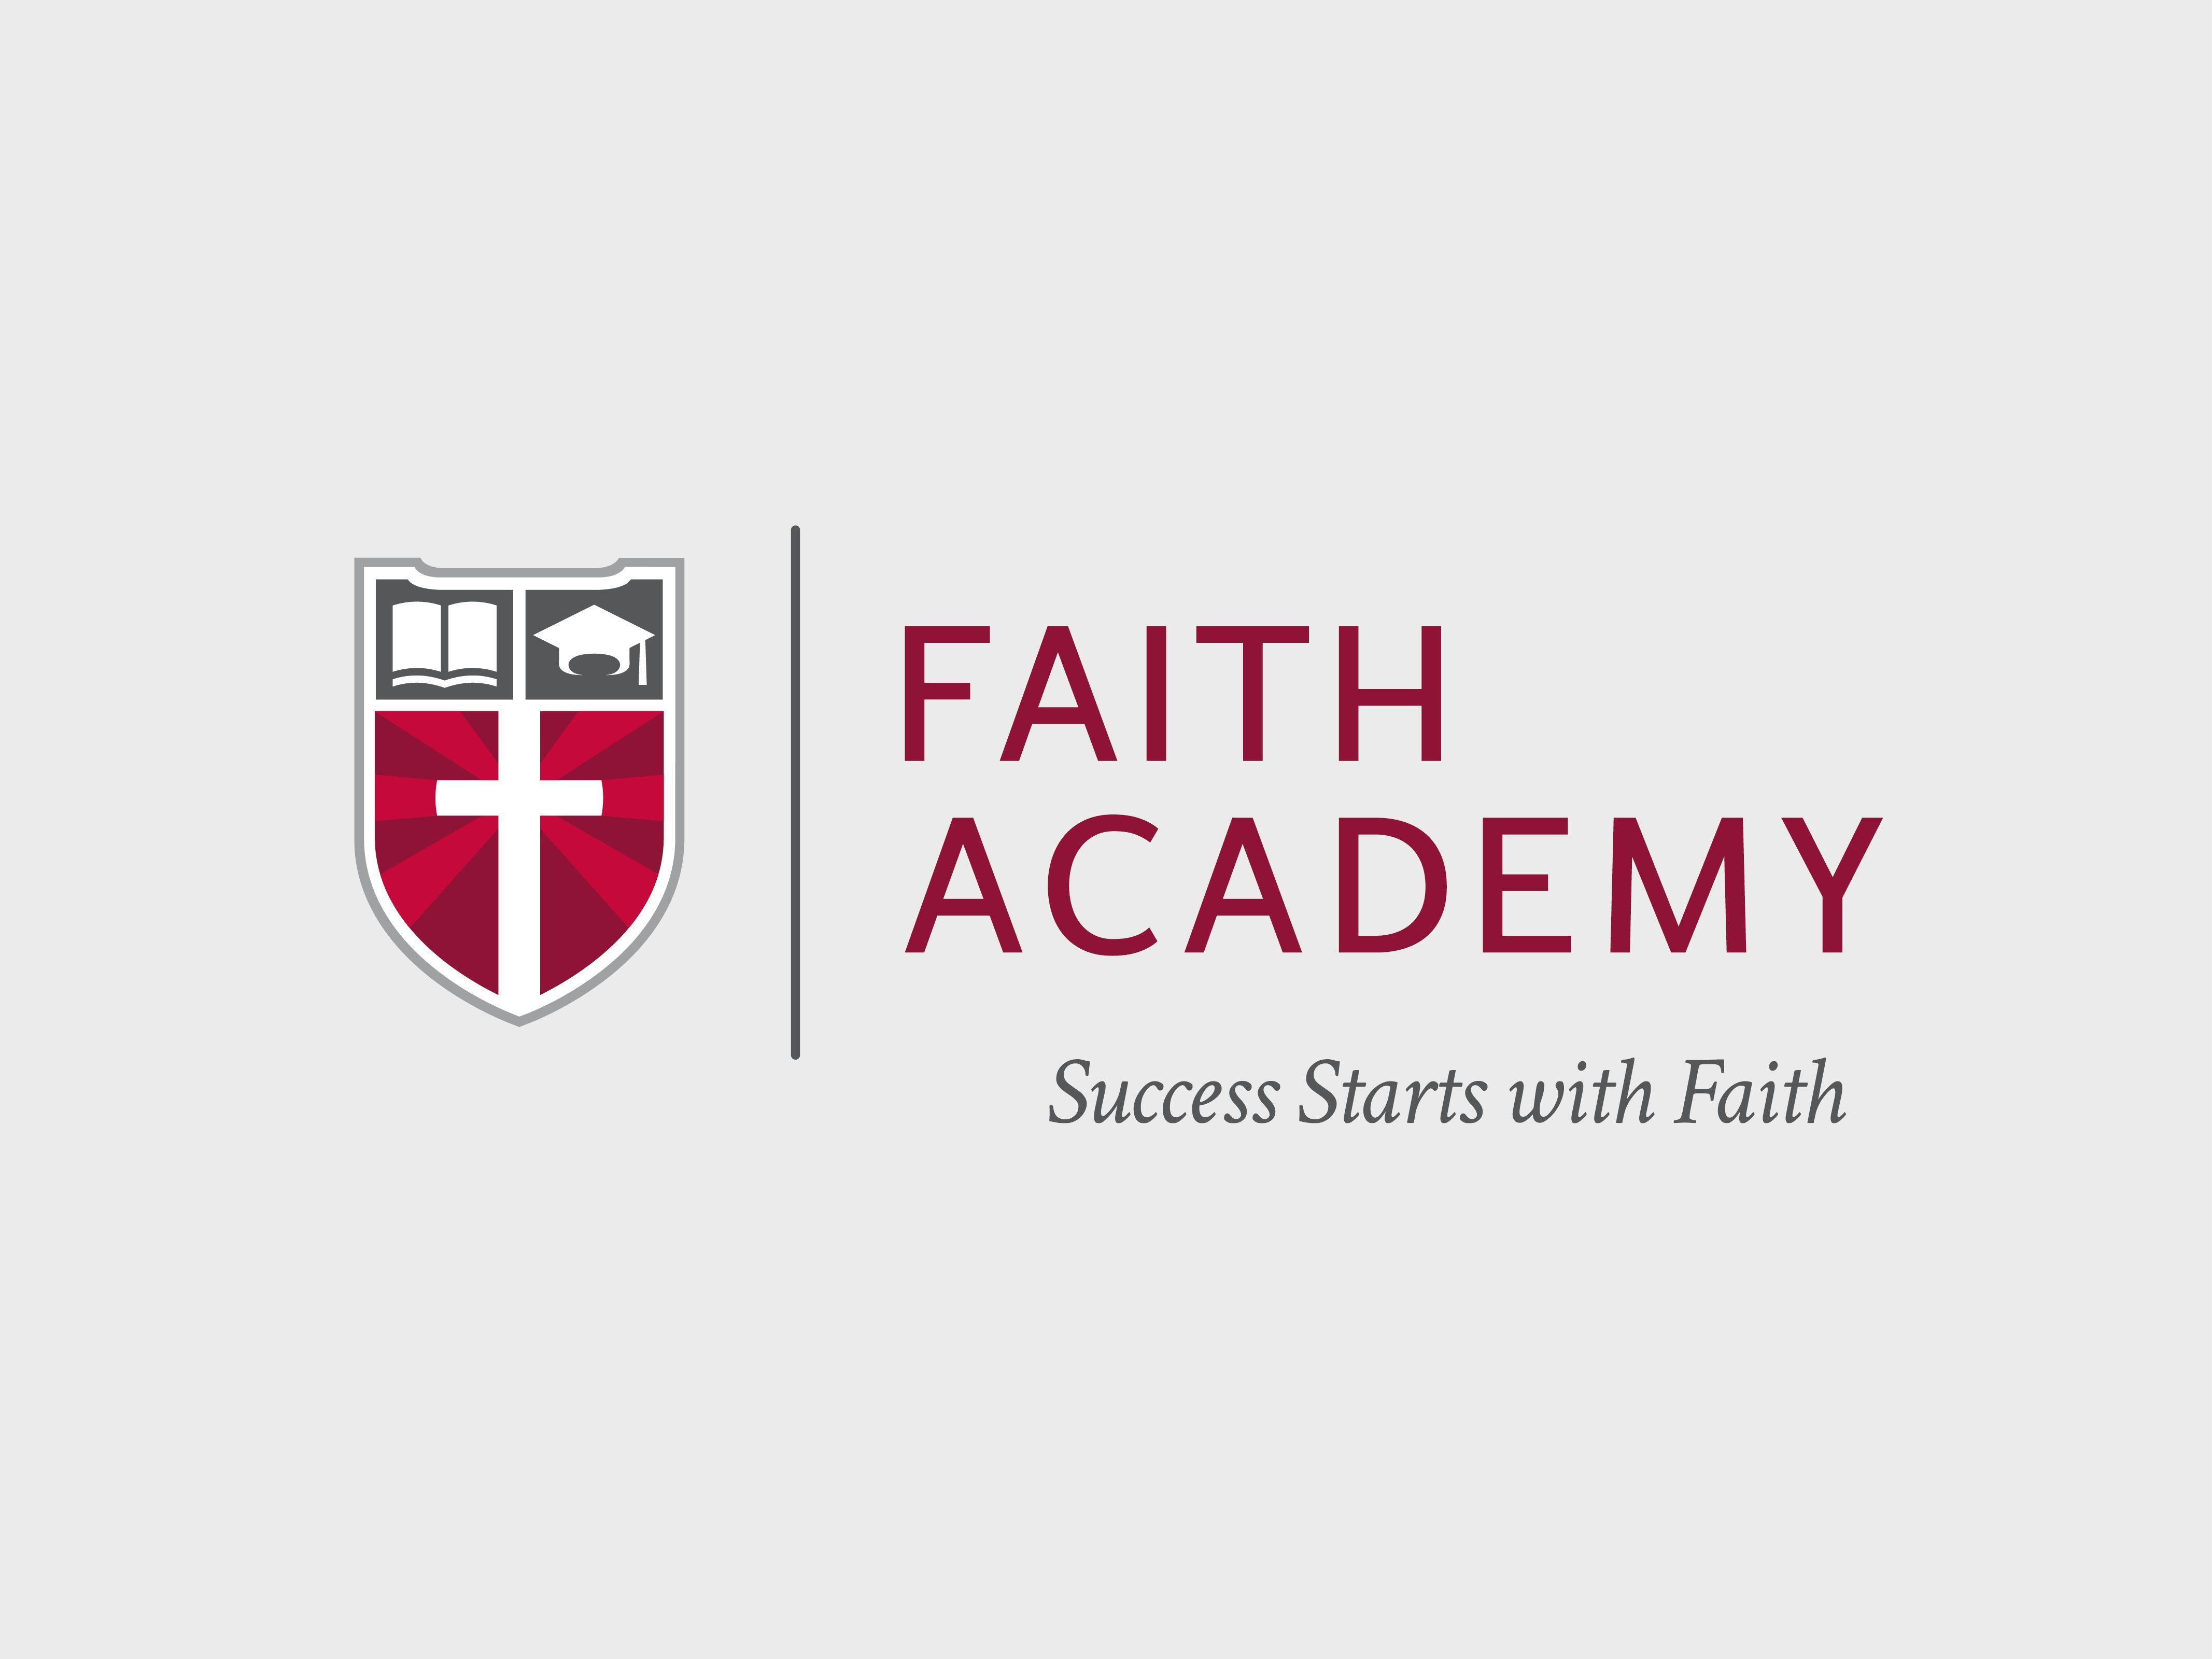 Academy Logo - Faith Academy Logo - Pixallure